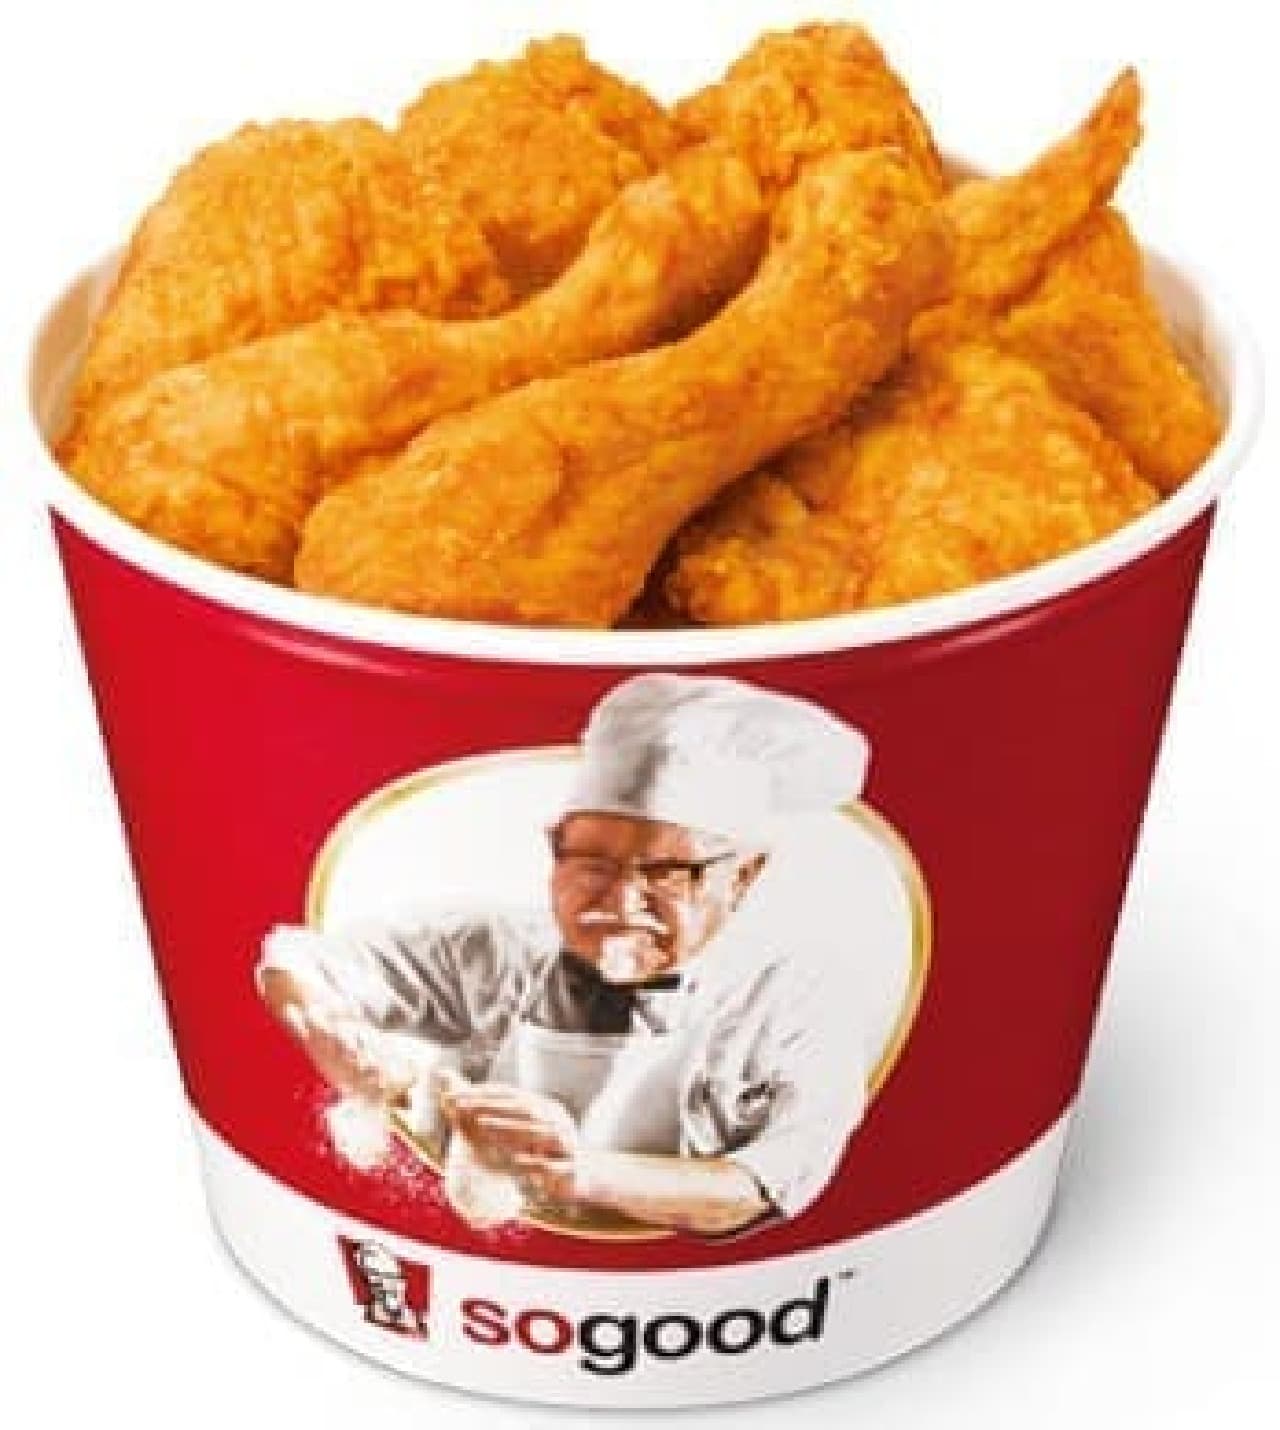 "Original chicken" is also on sale! (Image: KFC)